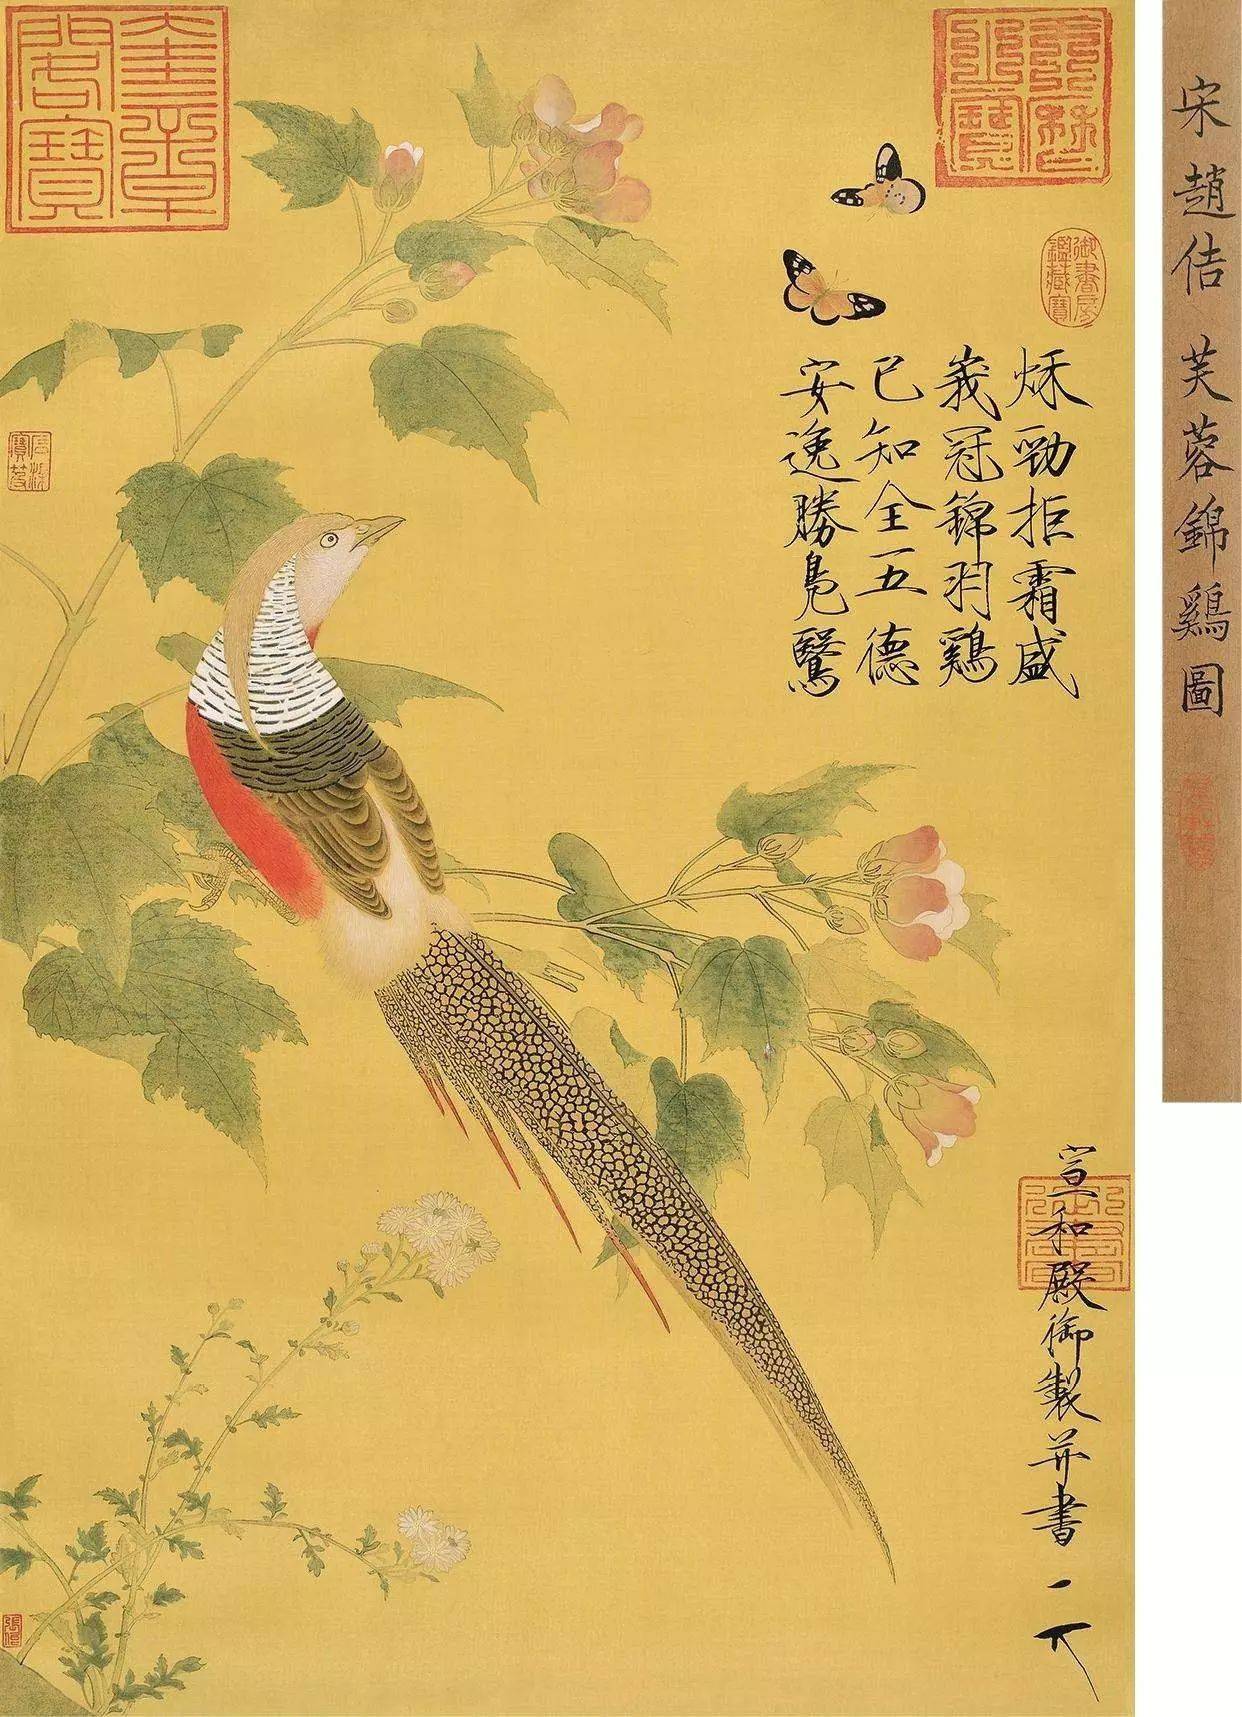 宋徽宗的代表作现存的有两幅,一个是《芙蓉锦鸡图,描绘的有芙蓉